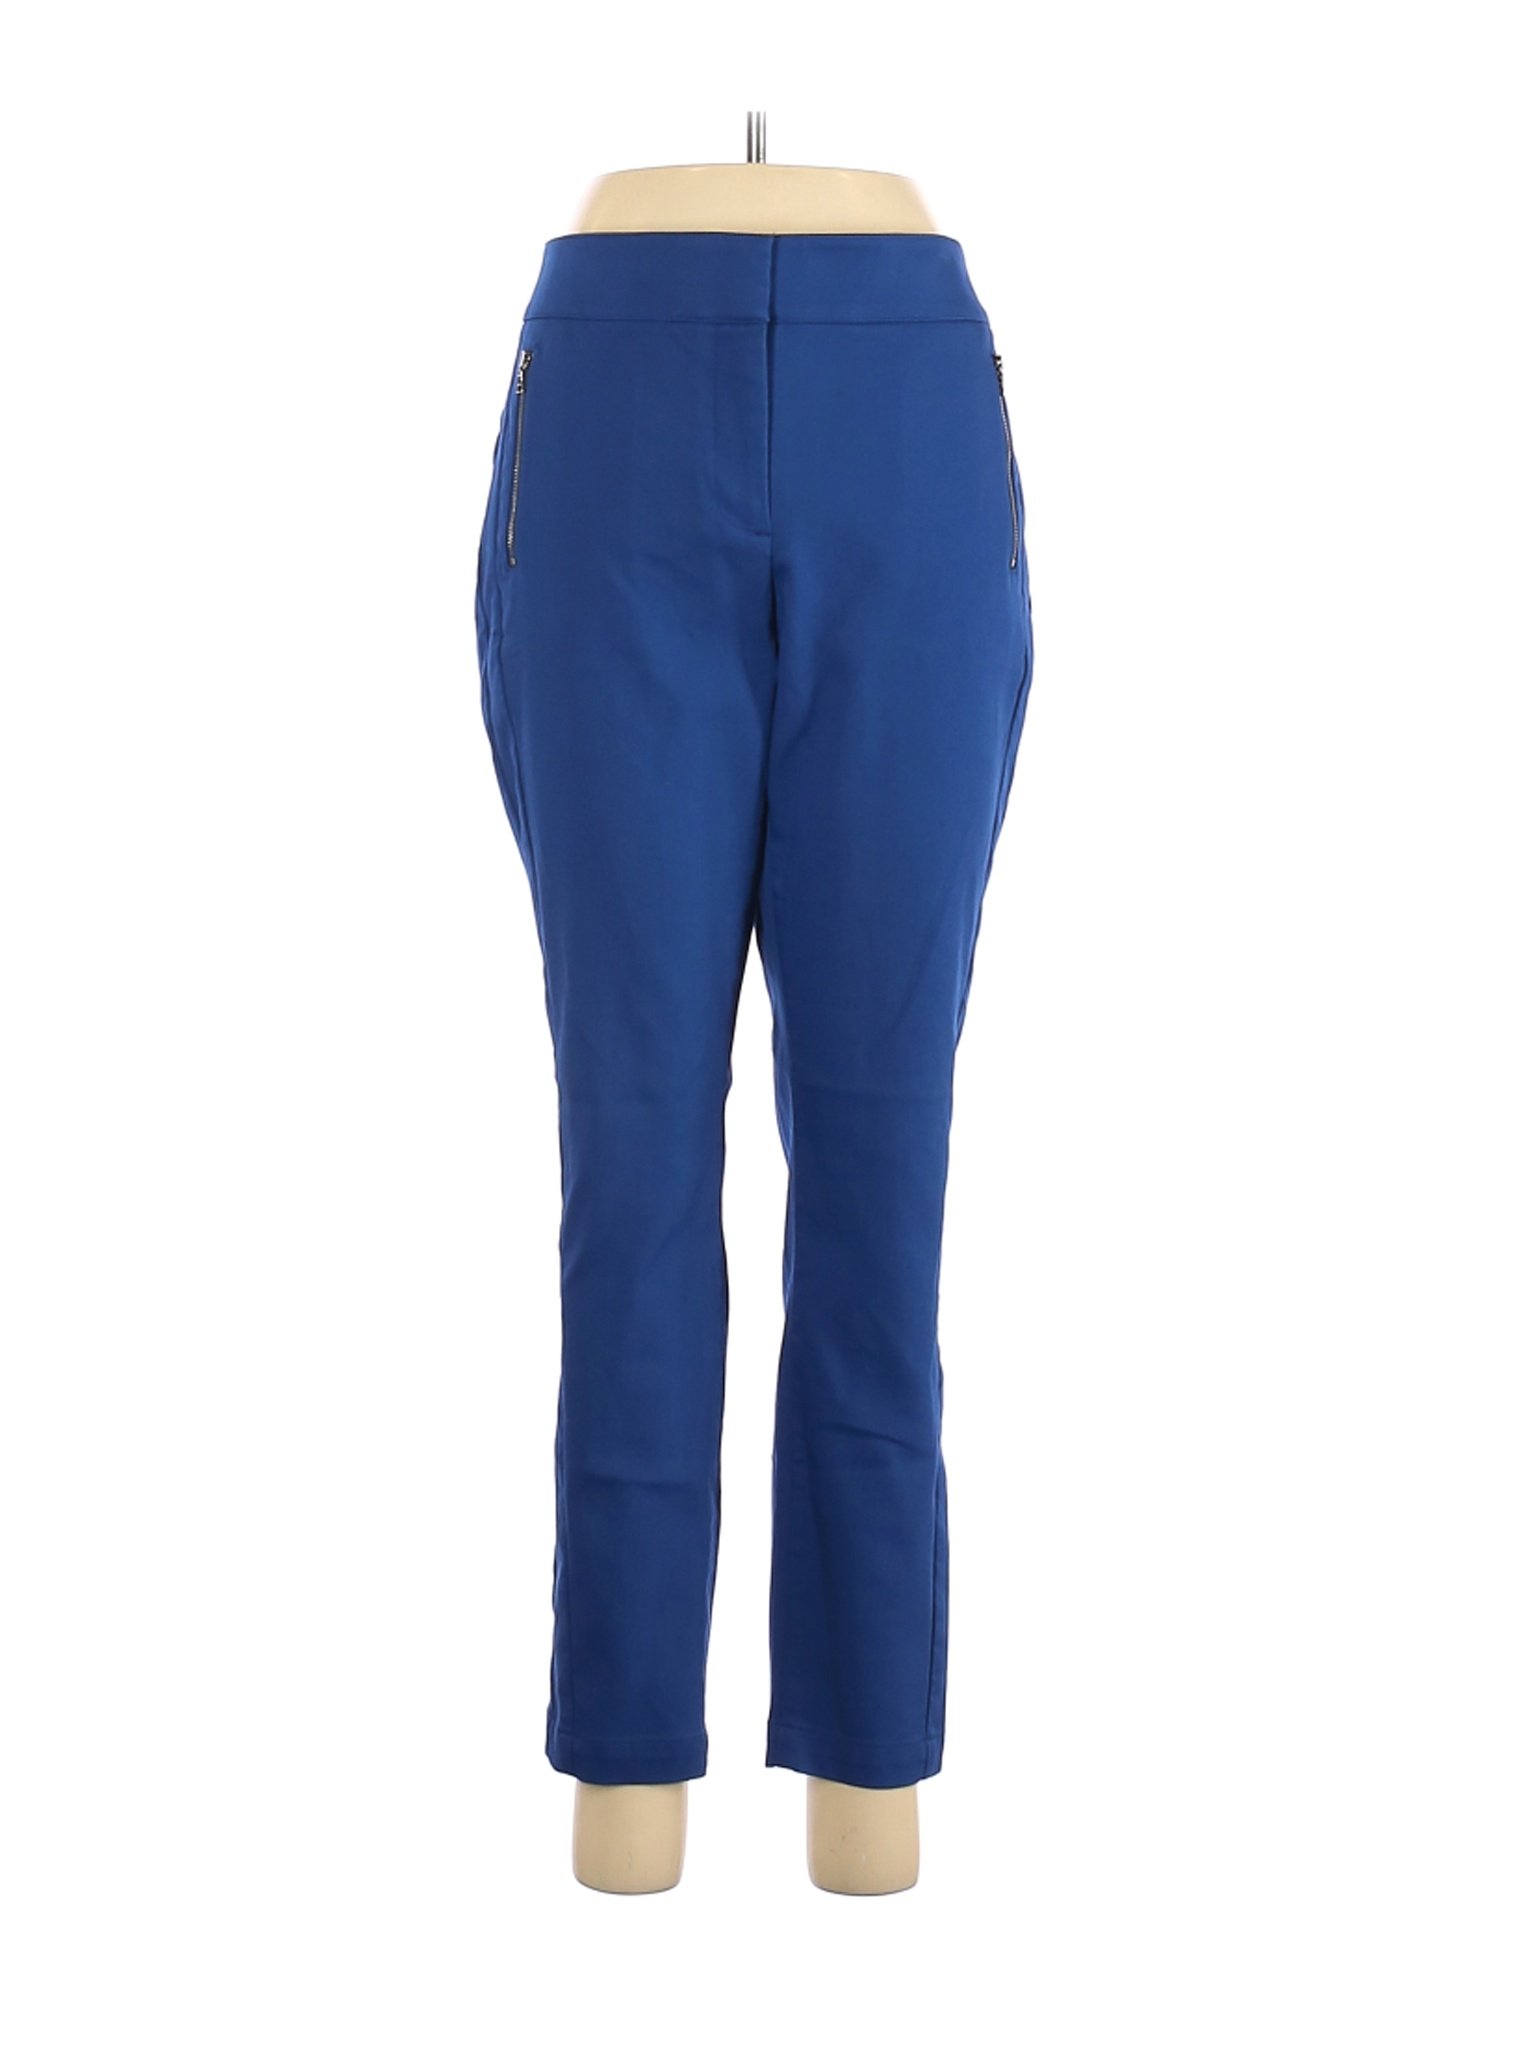 Ann Taylor LOFT Women Blue Casual Pants 8 | eBay